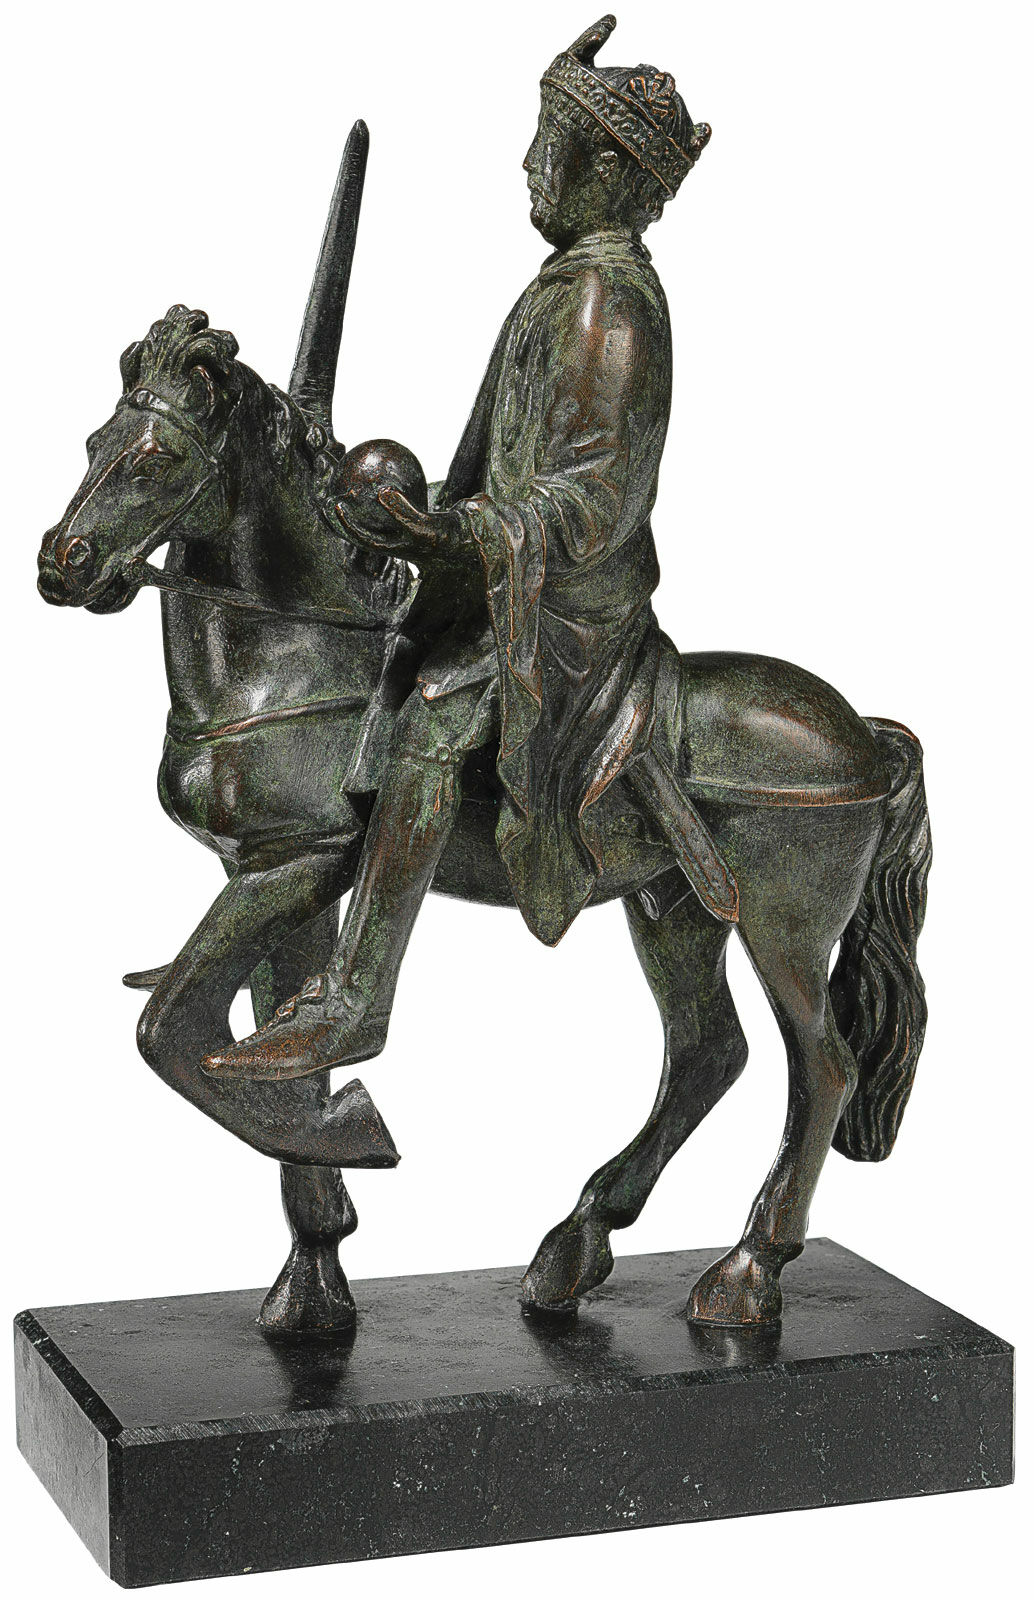 Rytterstatuette "Charlemagne", bronzeversion